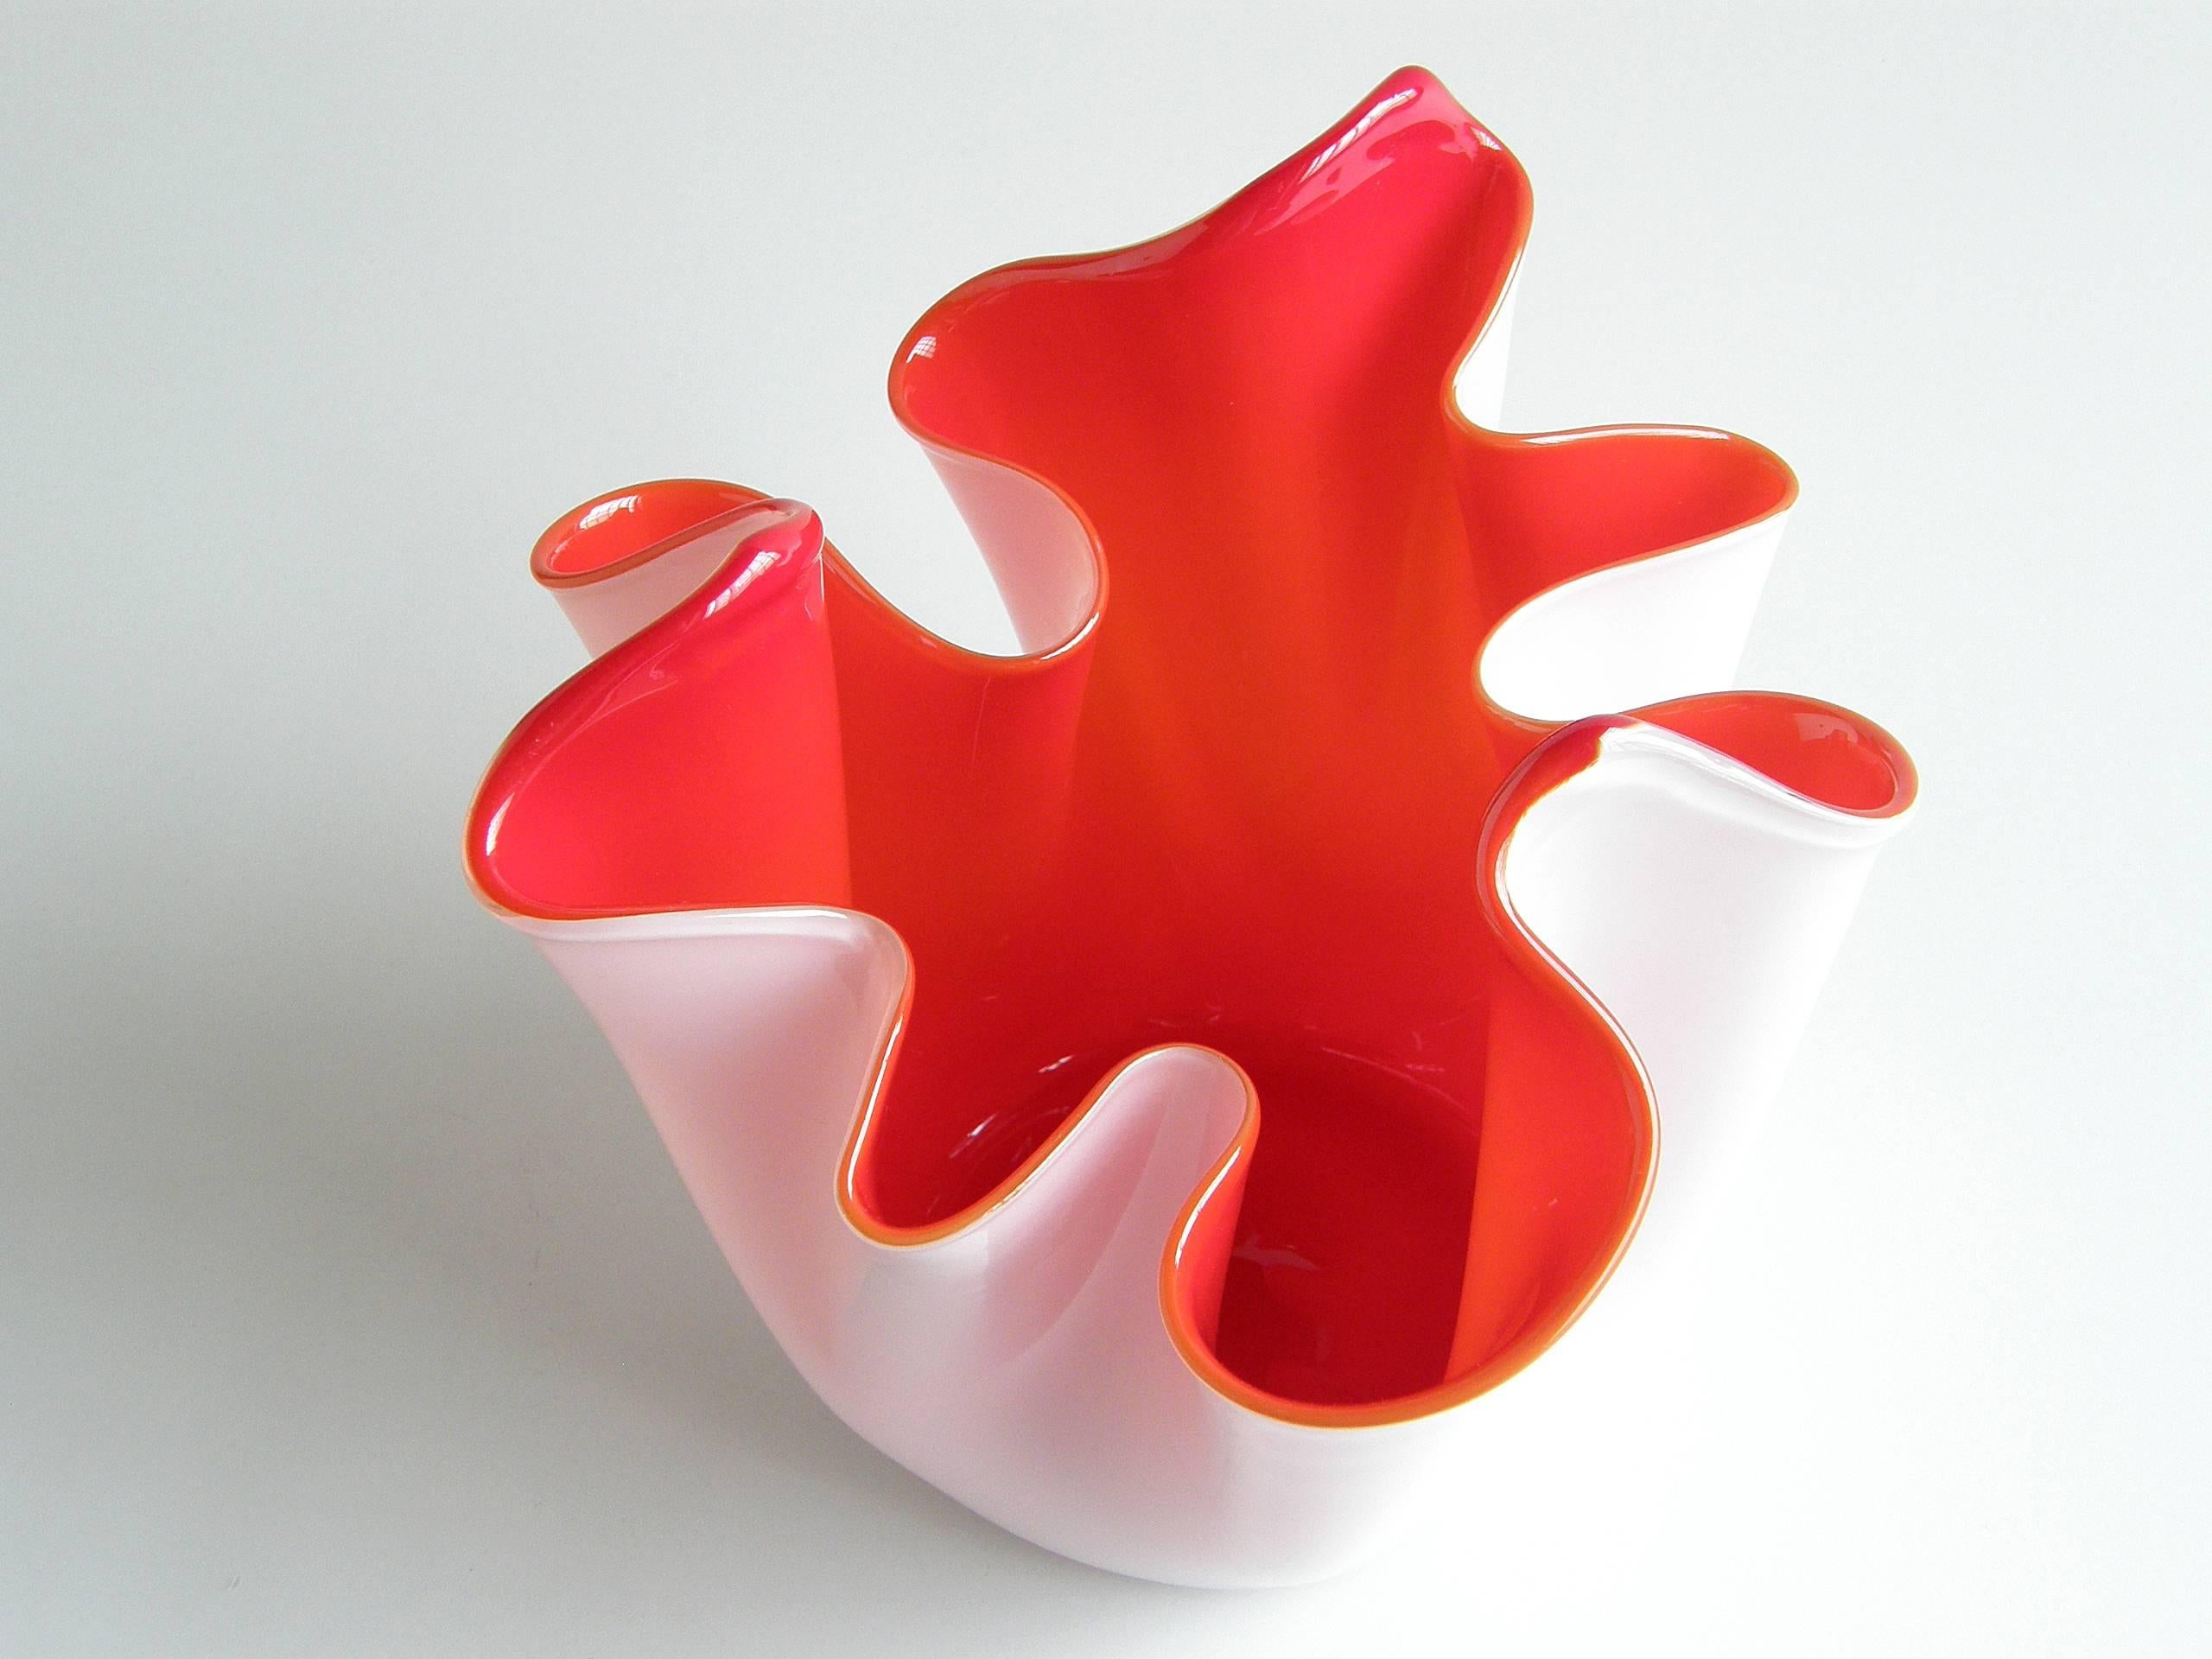 Art Glass Fulvio Bianconi for Venini Fazzoletto Vase White and Red Free Form Handkerchief